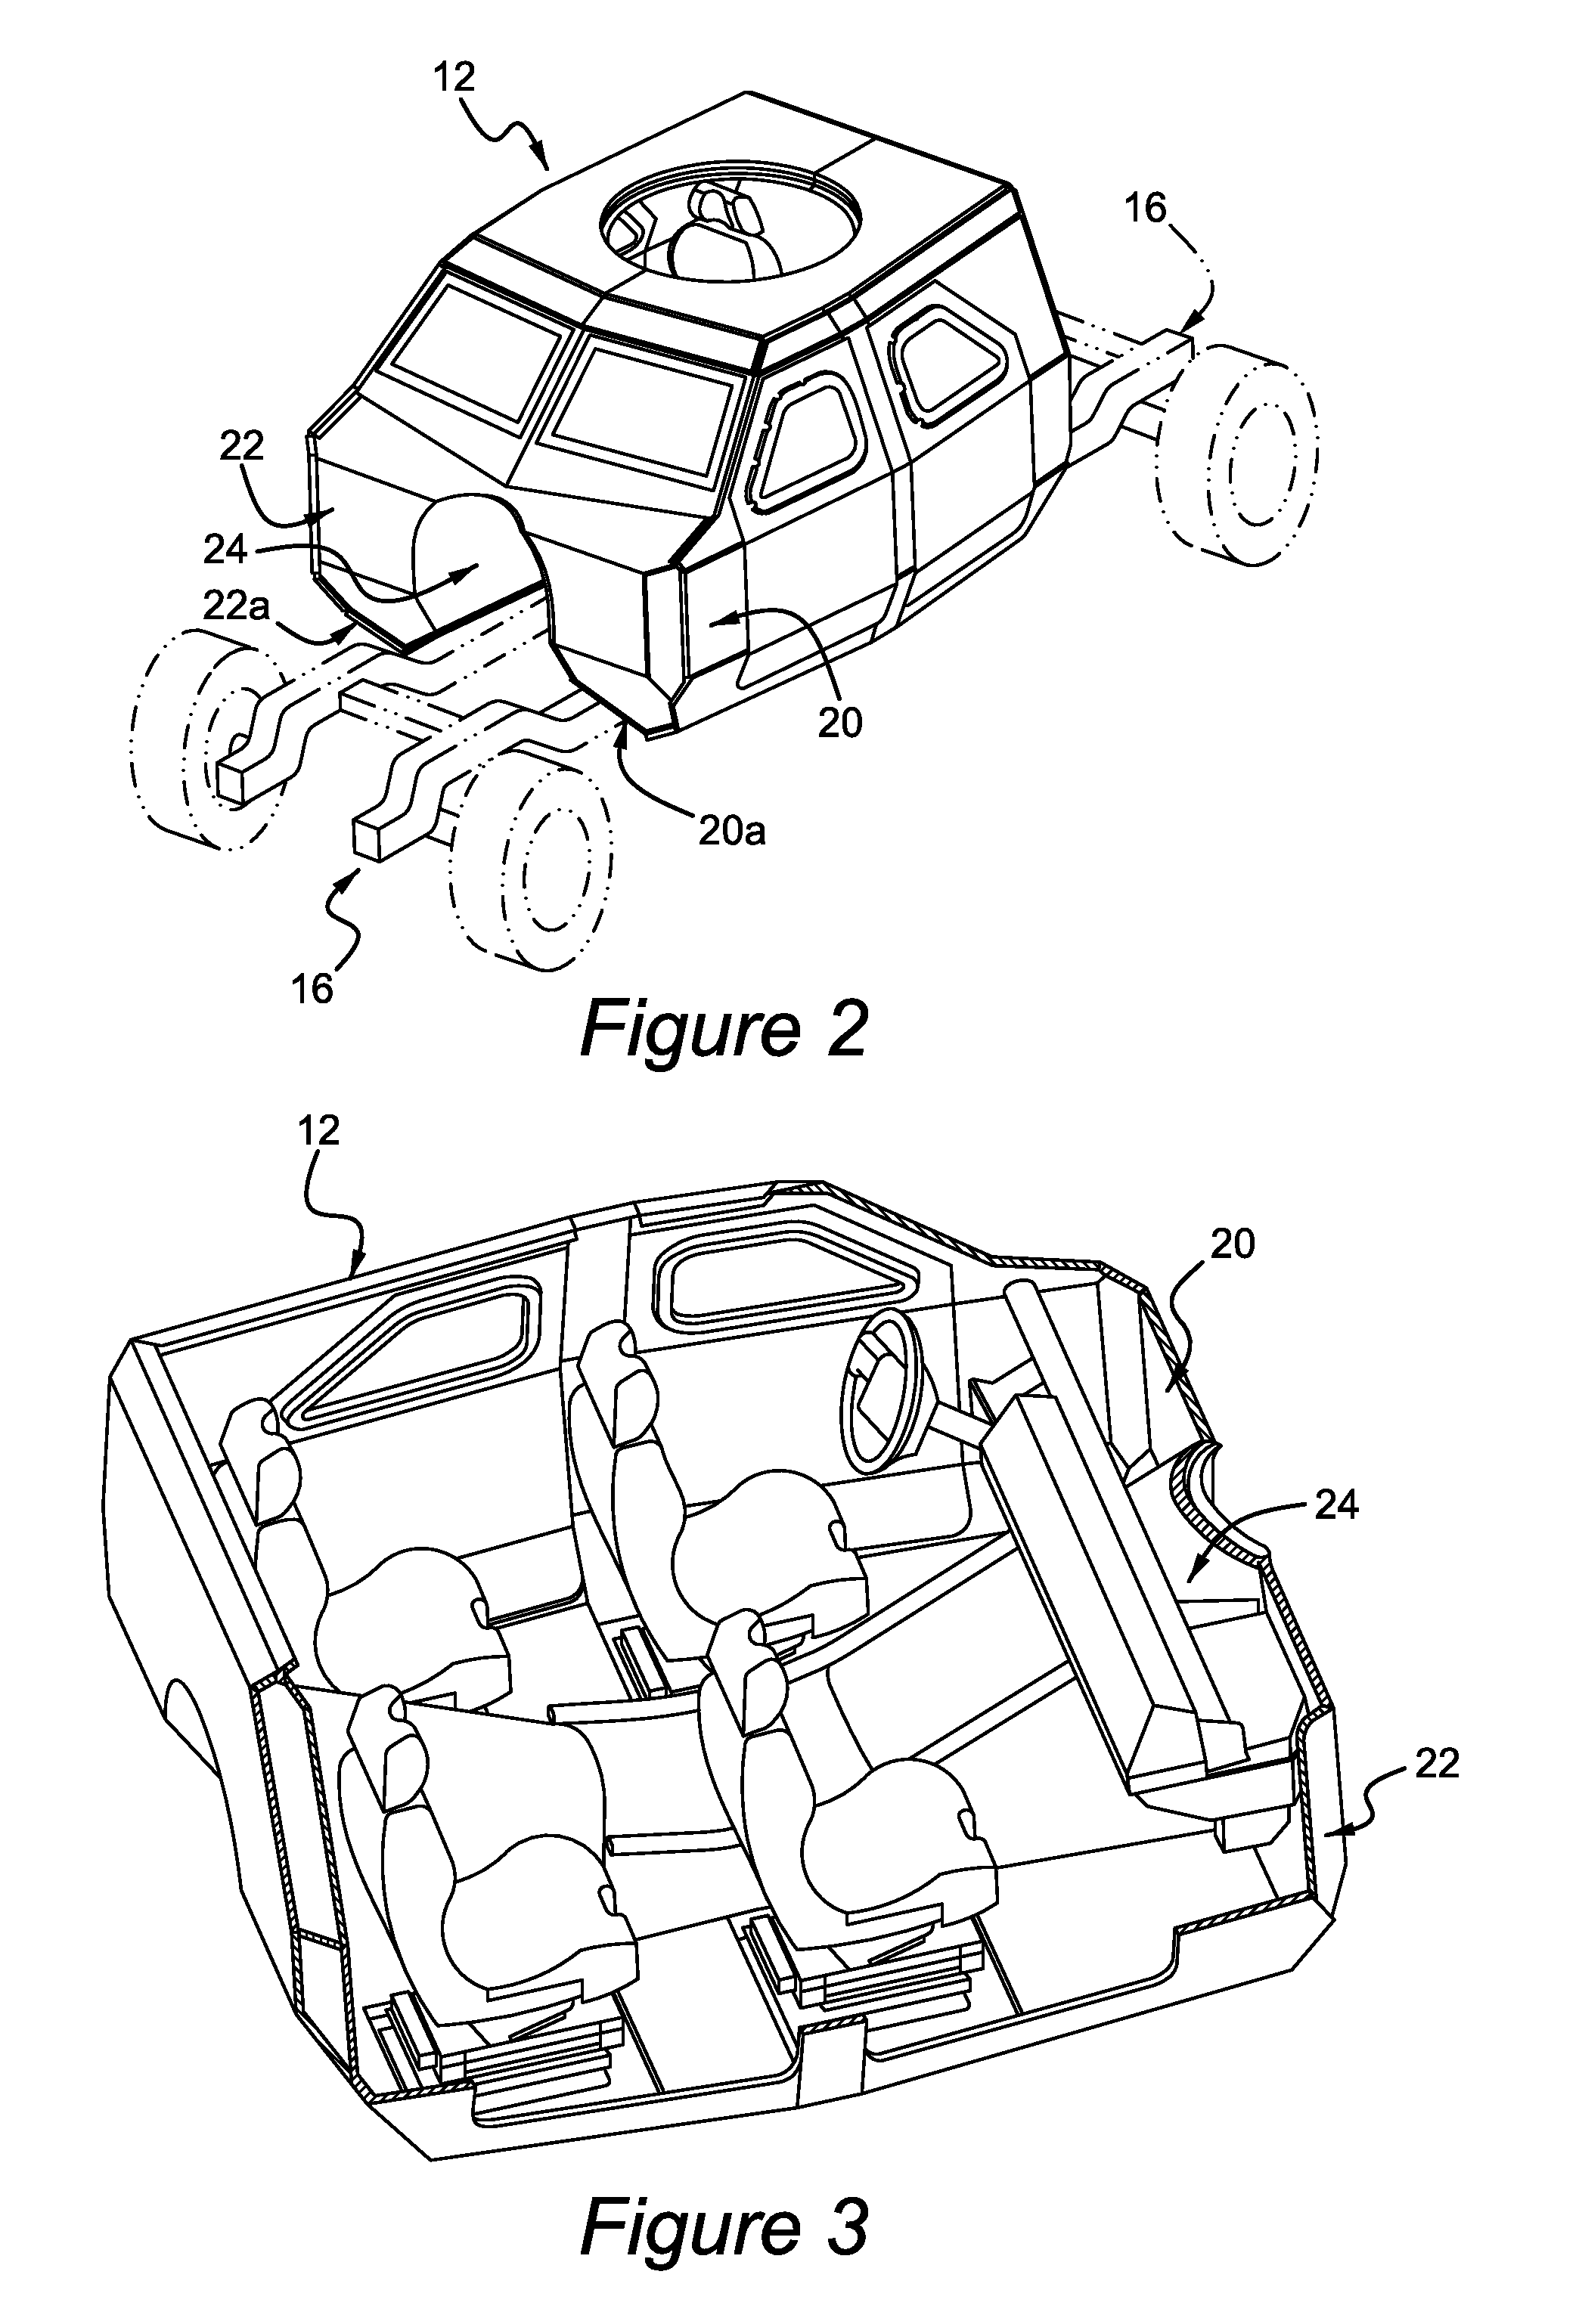 Blast-resistant vehicle hull